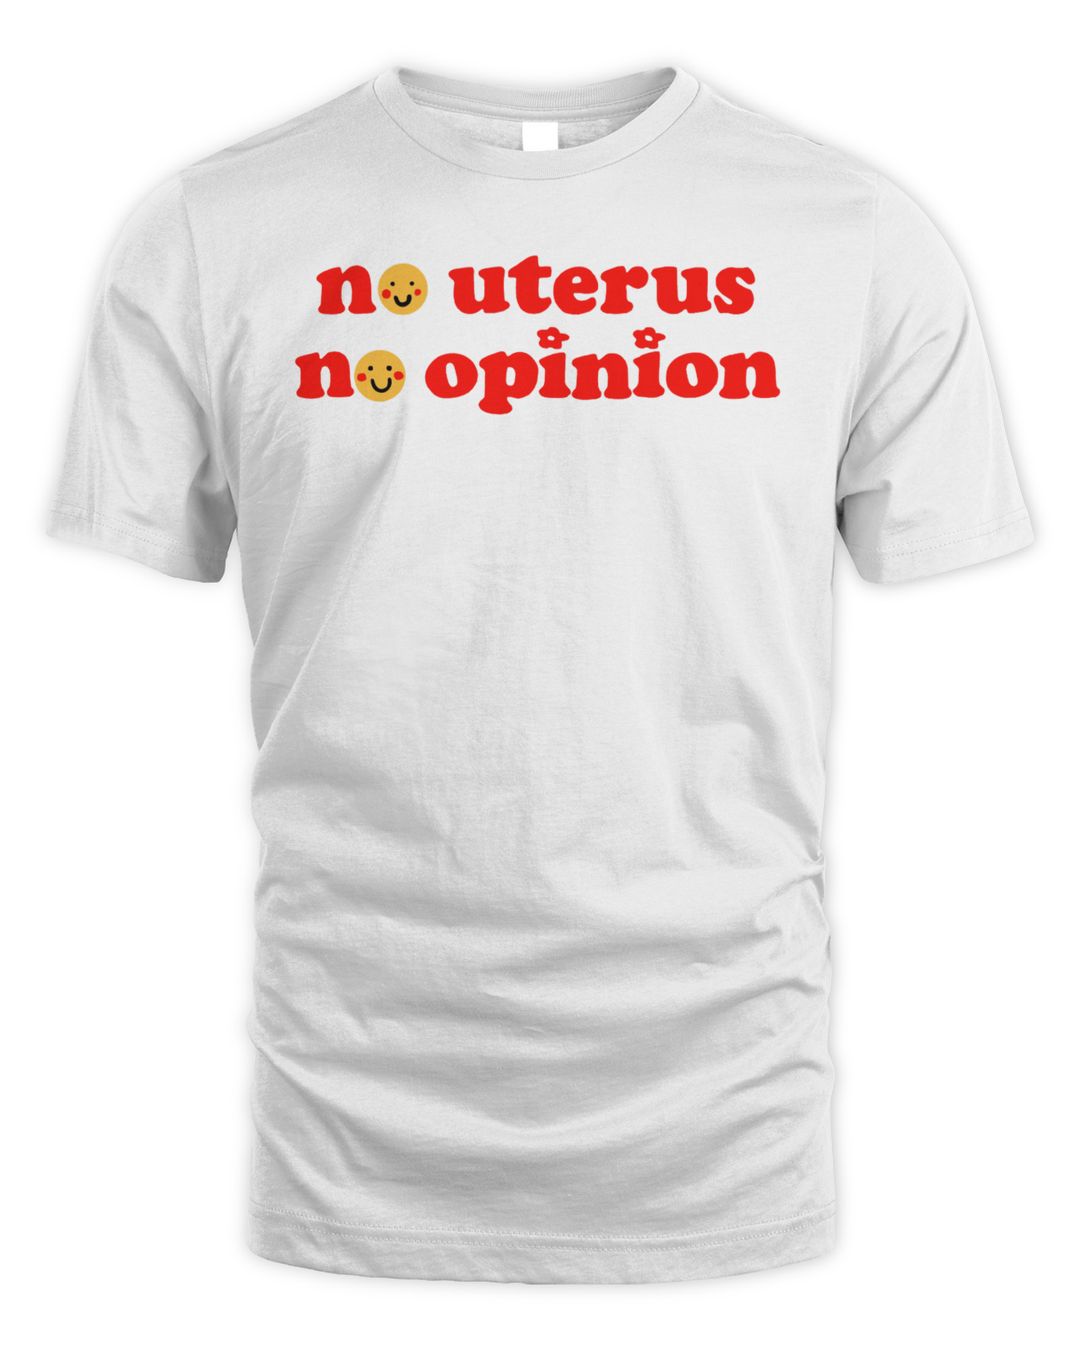 No Uterus No Opinion Shirt 6rx